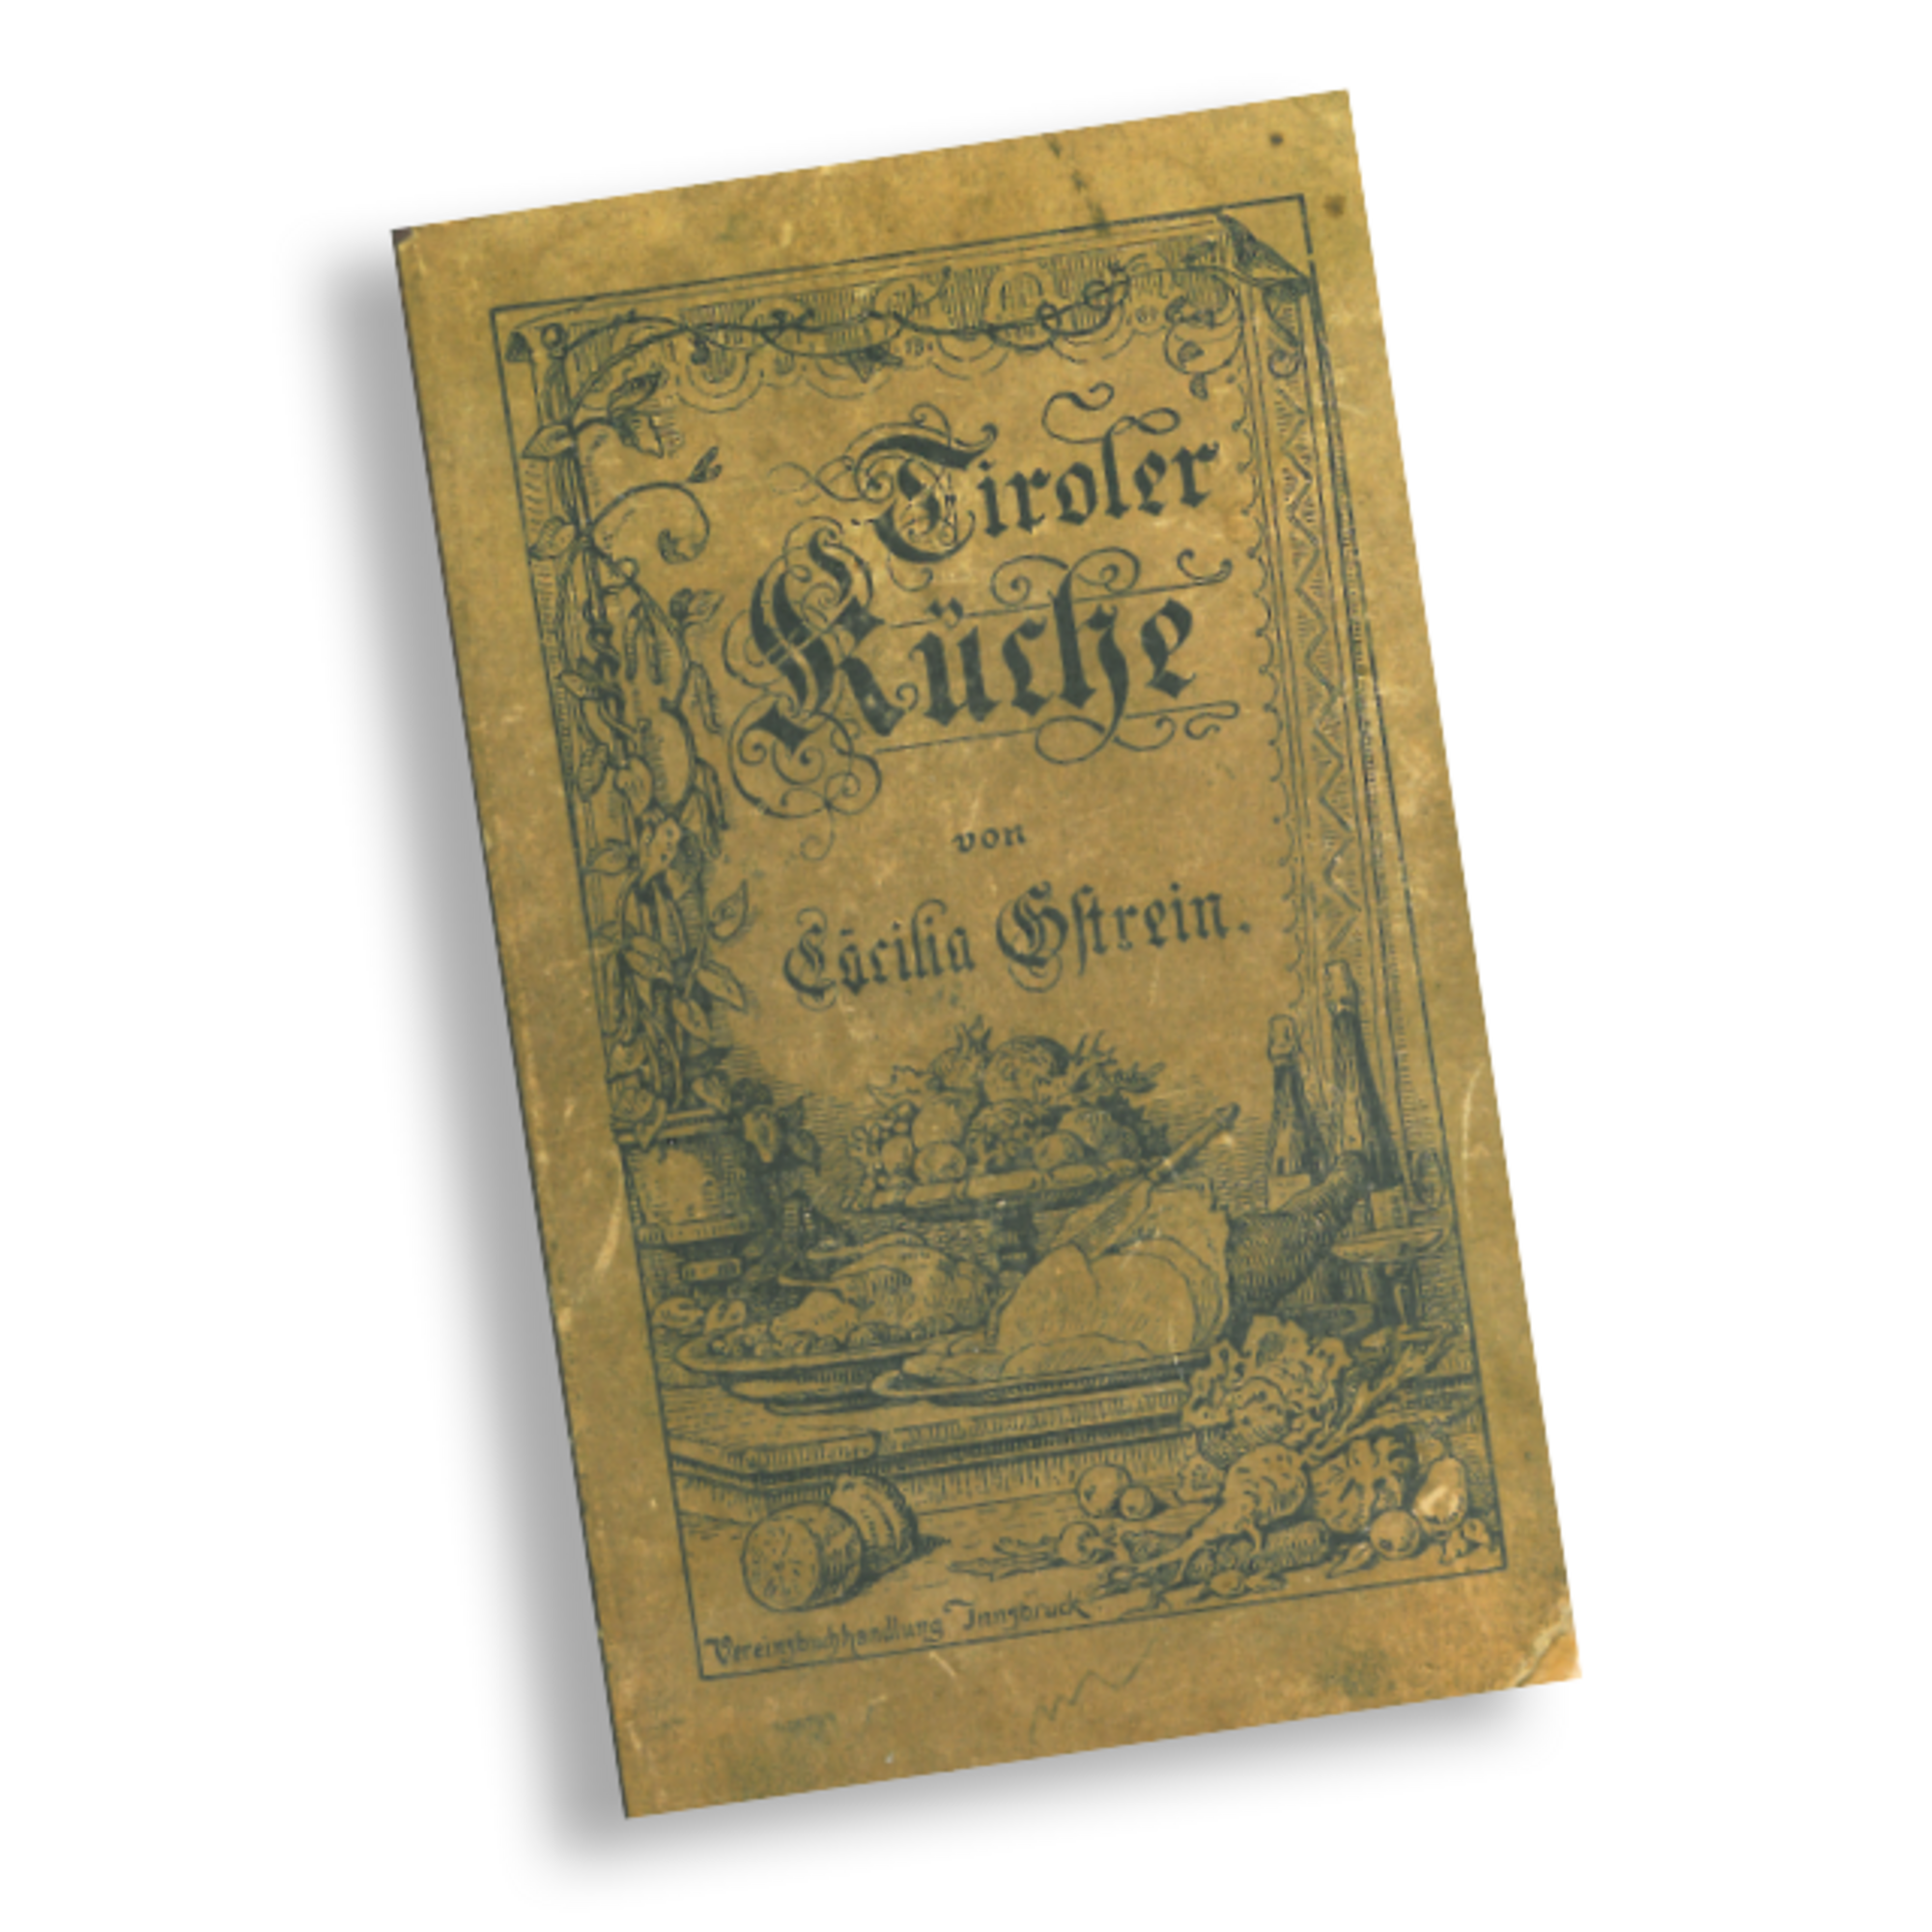 Cookbook - "Tiroler Küche"